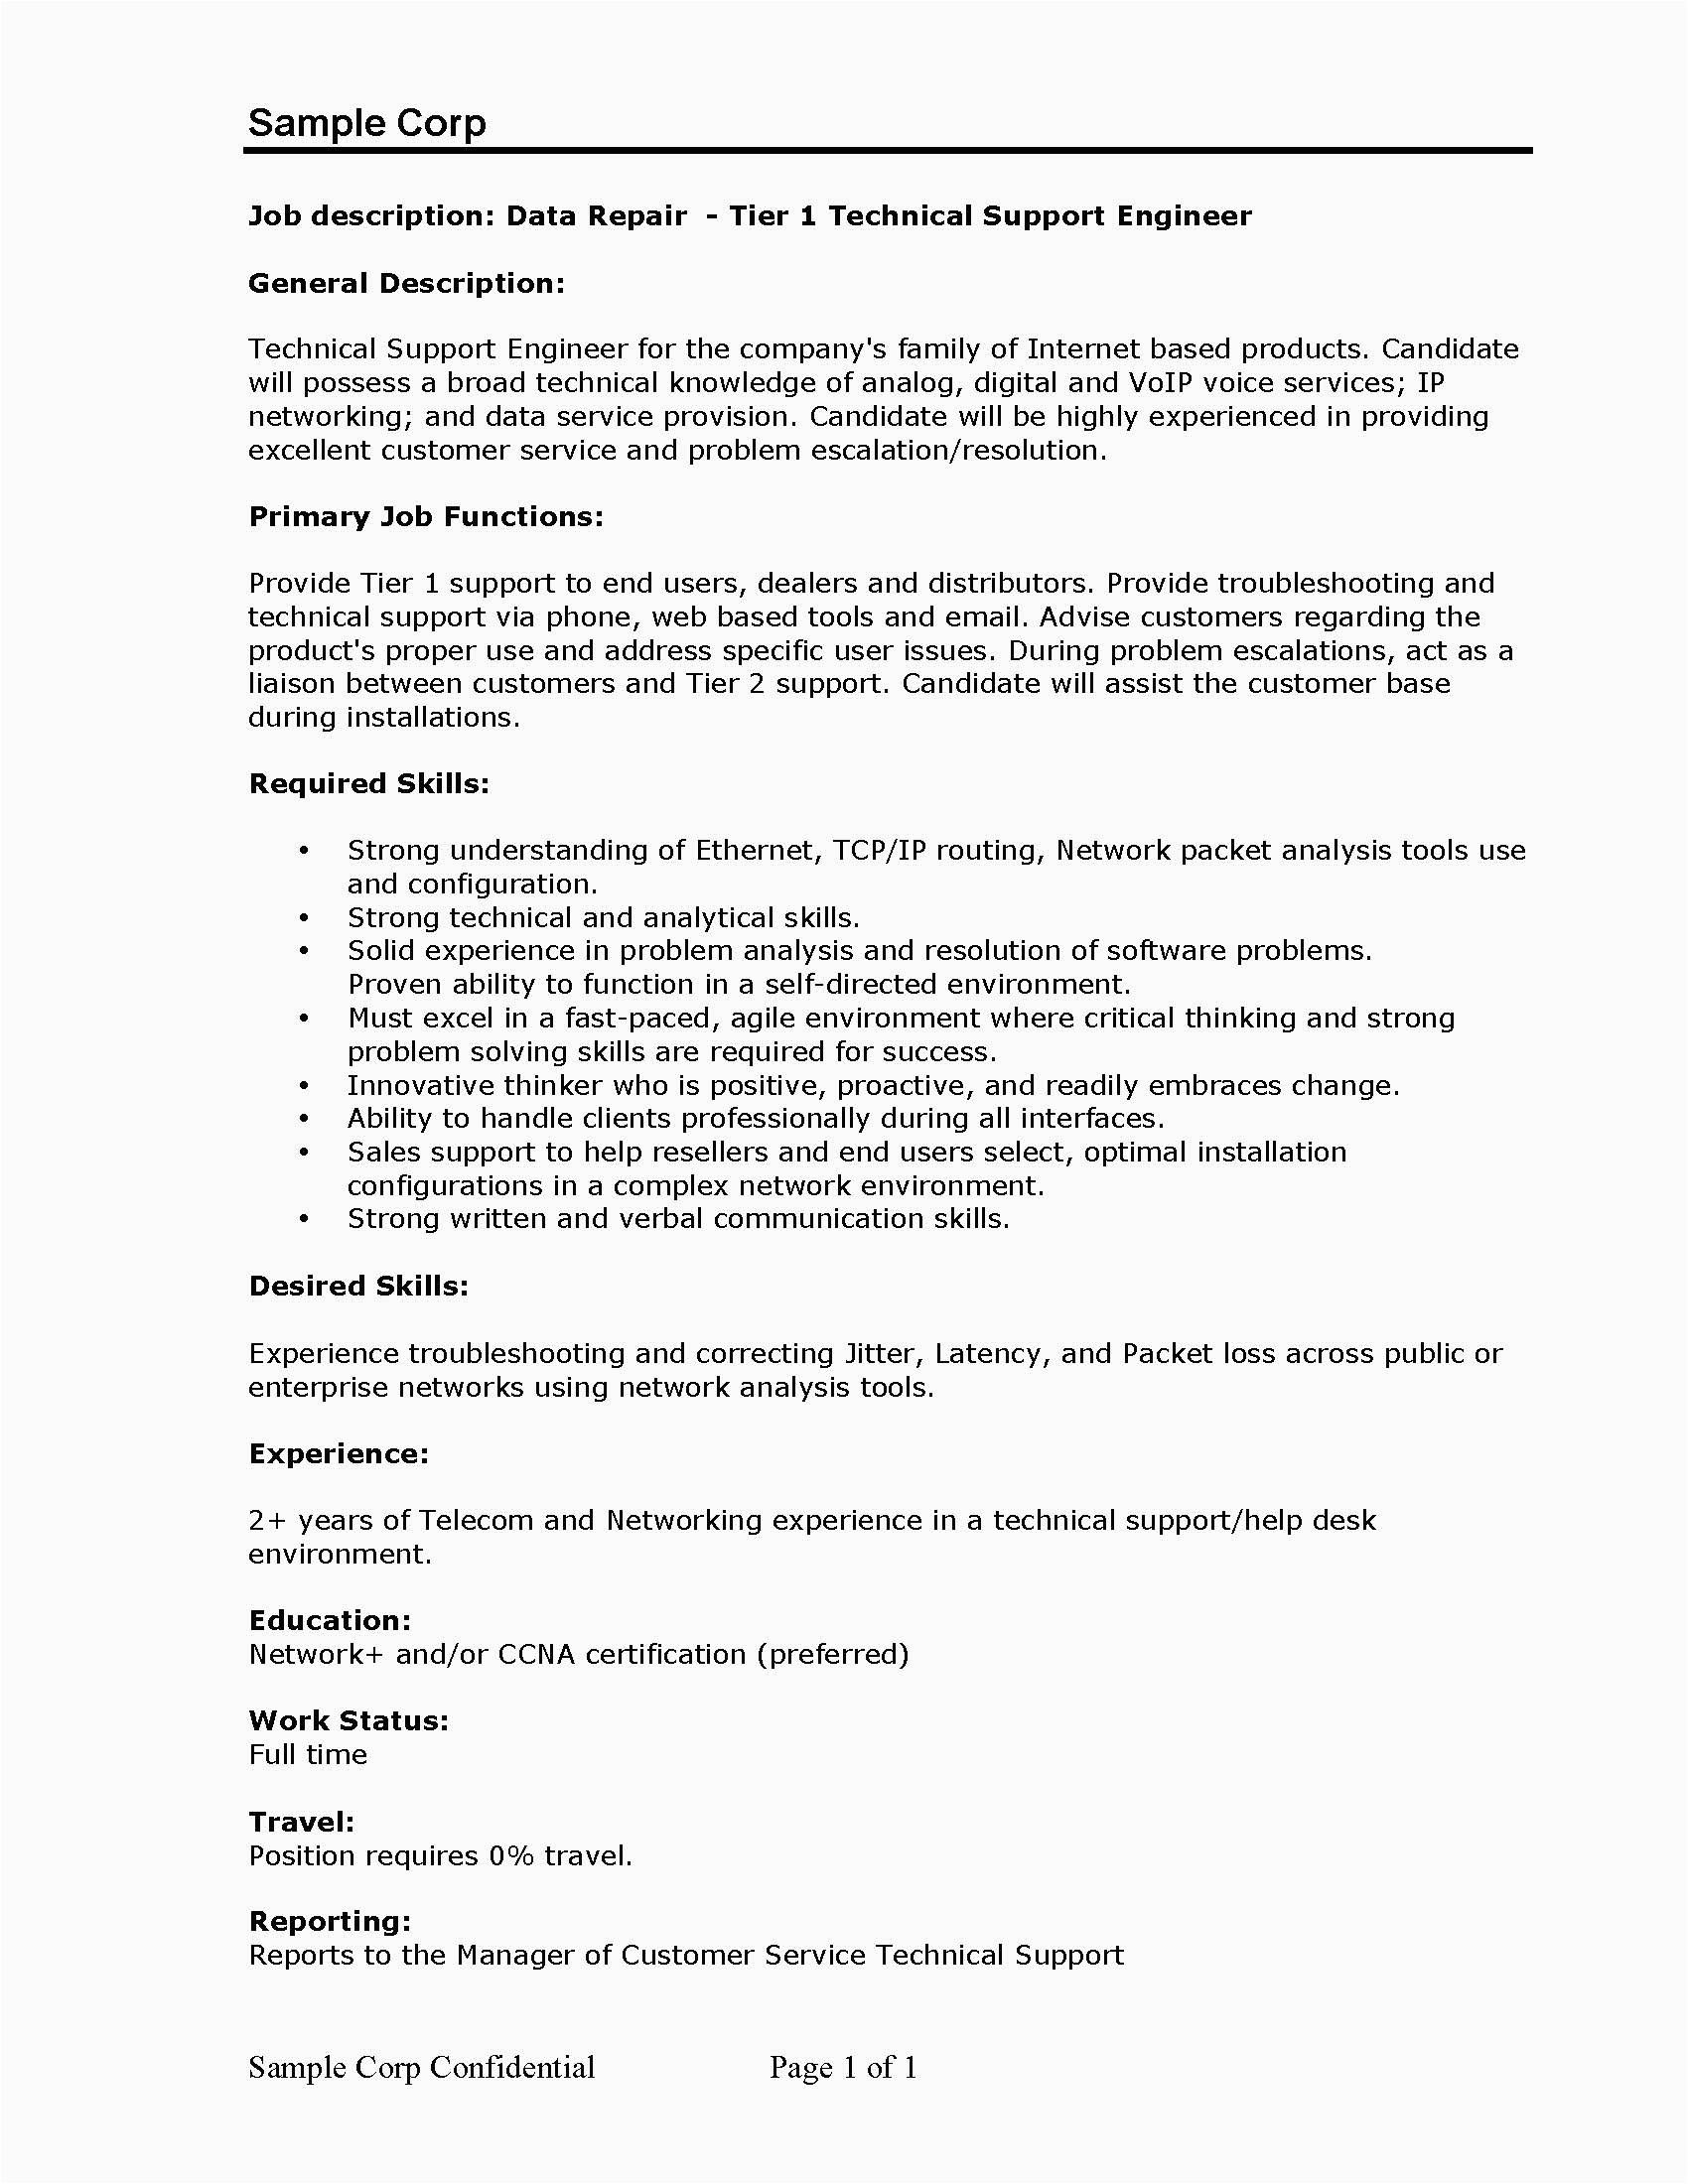 Sample Resume format for Desktop Support Engineer Desktop Support Engineer Resume Pdf format